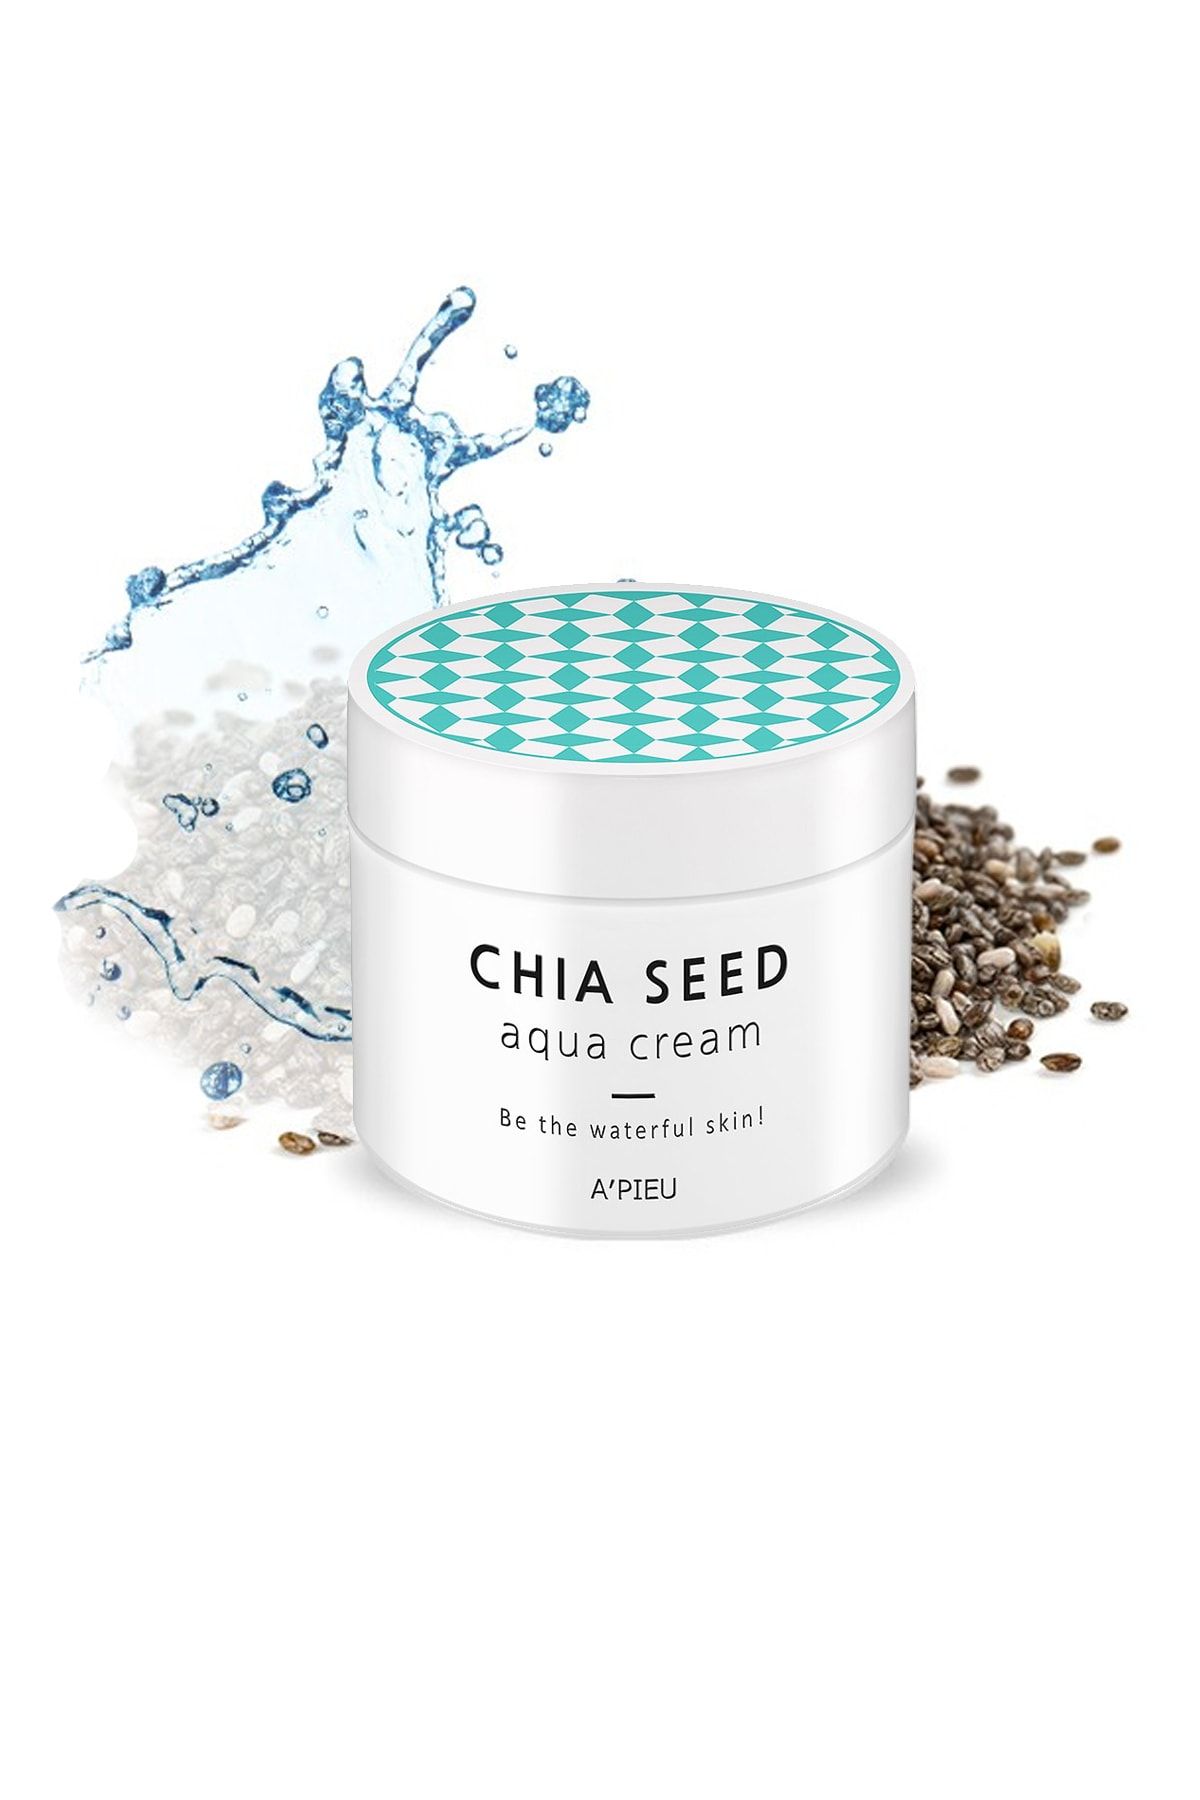 Missha Chia Tohumu İçerikli Nemsiz Ciltler İçin Bakım Kremi 110ml APIEU Chia Seed Aqua Cream